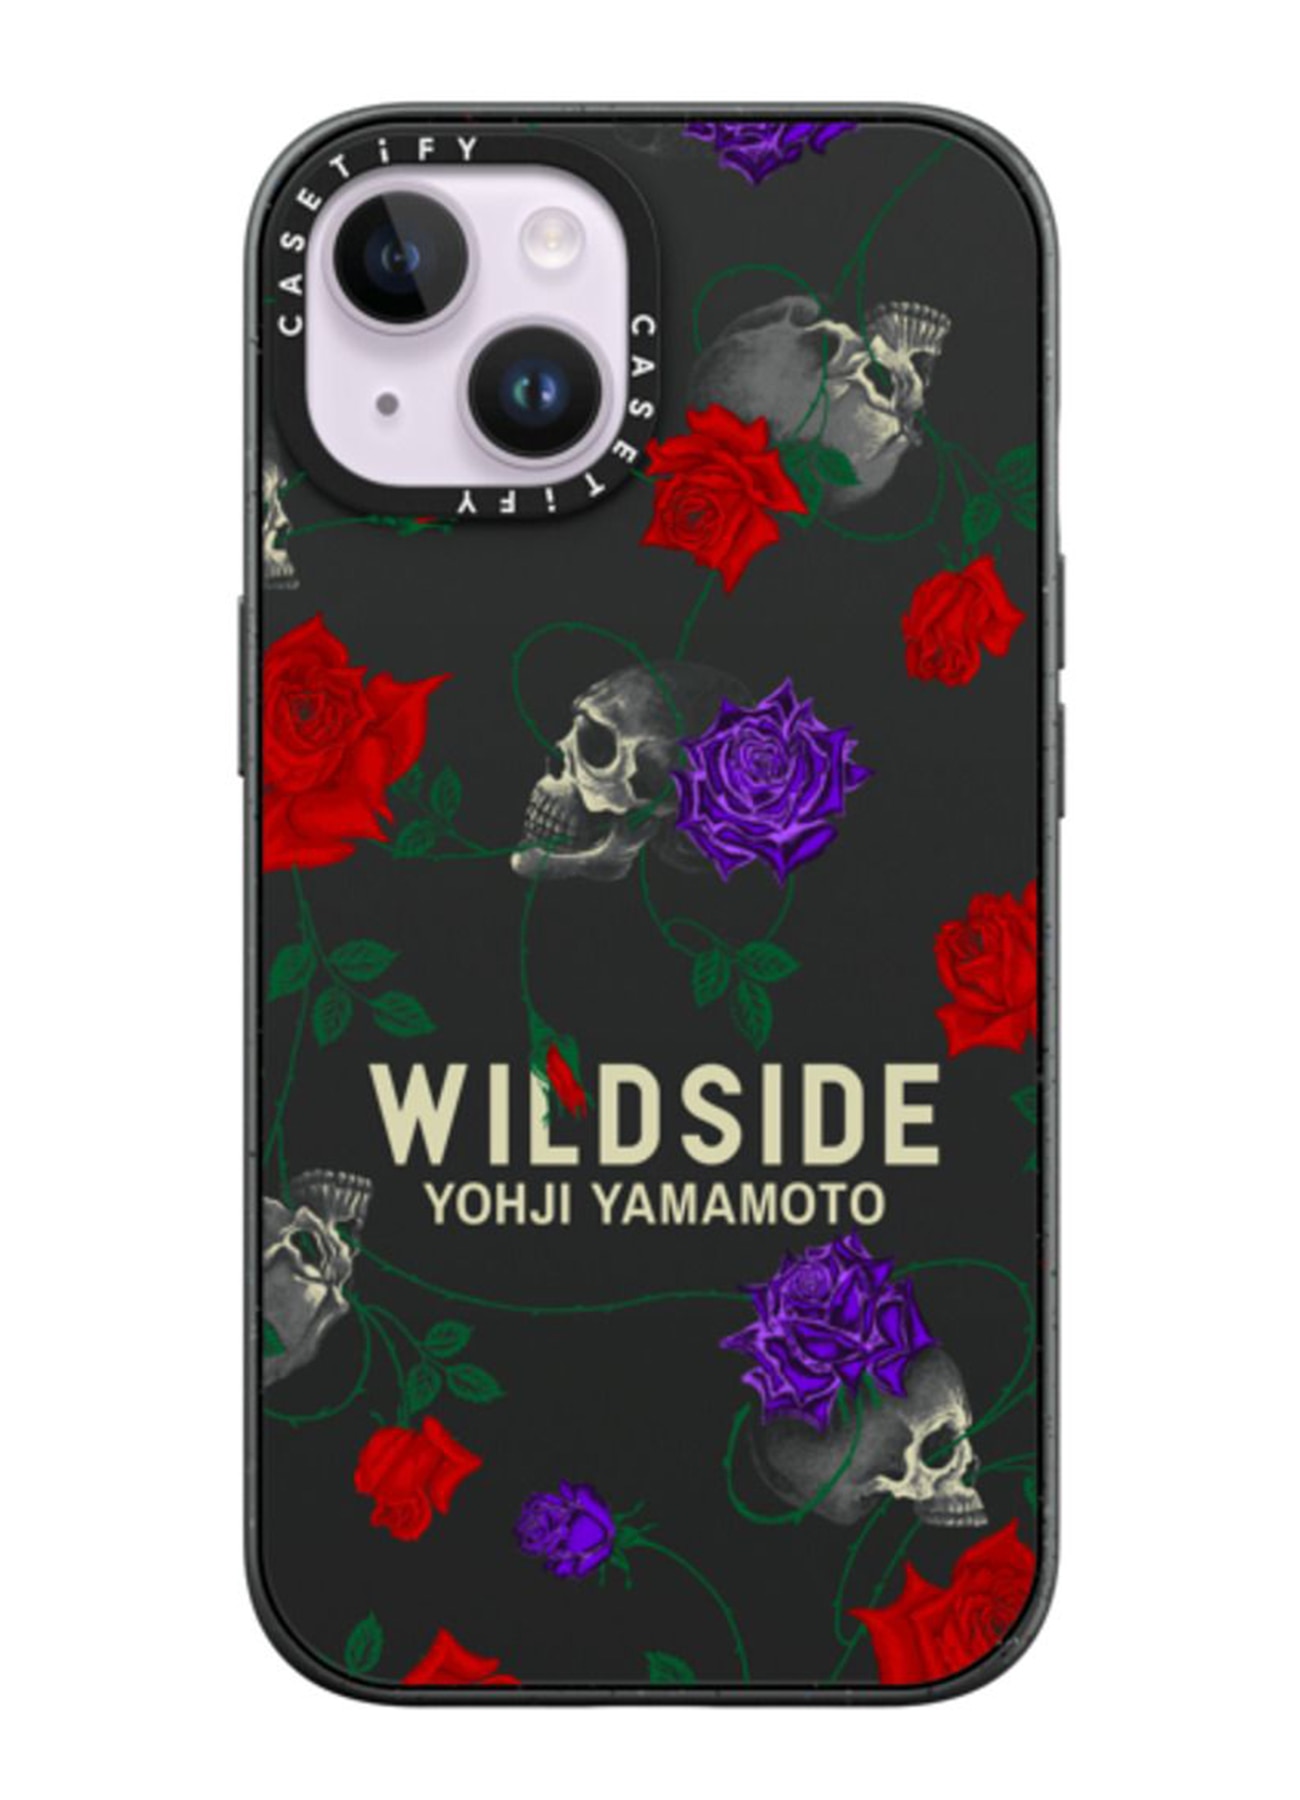 WILDSIDE x CASETiFY SKULL & ROSE iPhone case (Matte Black)